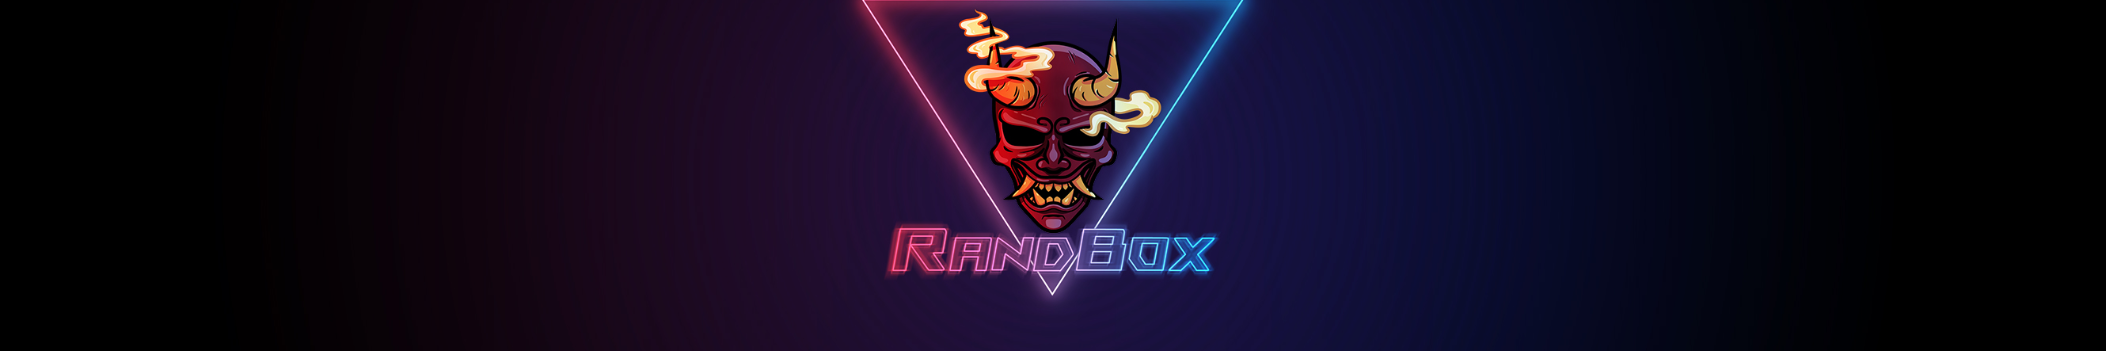 RandBox